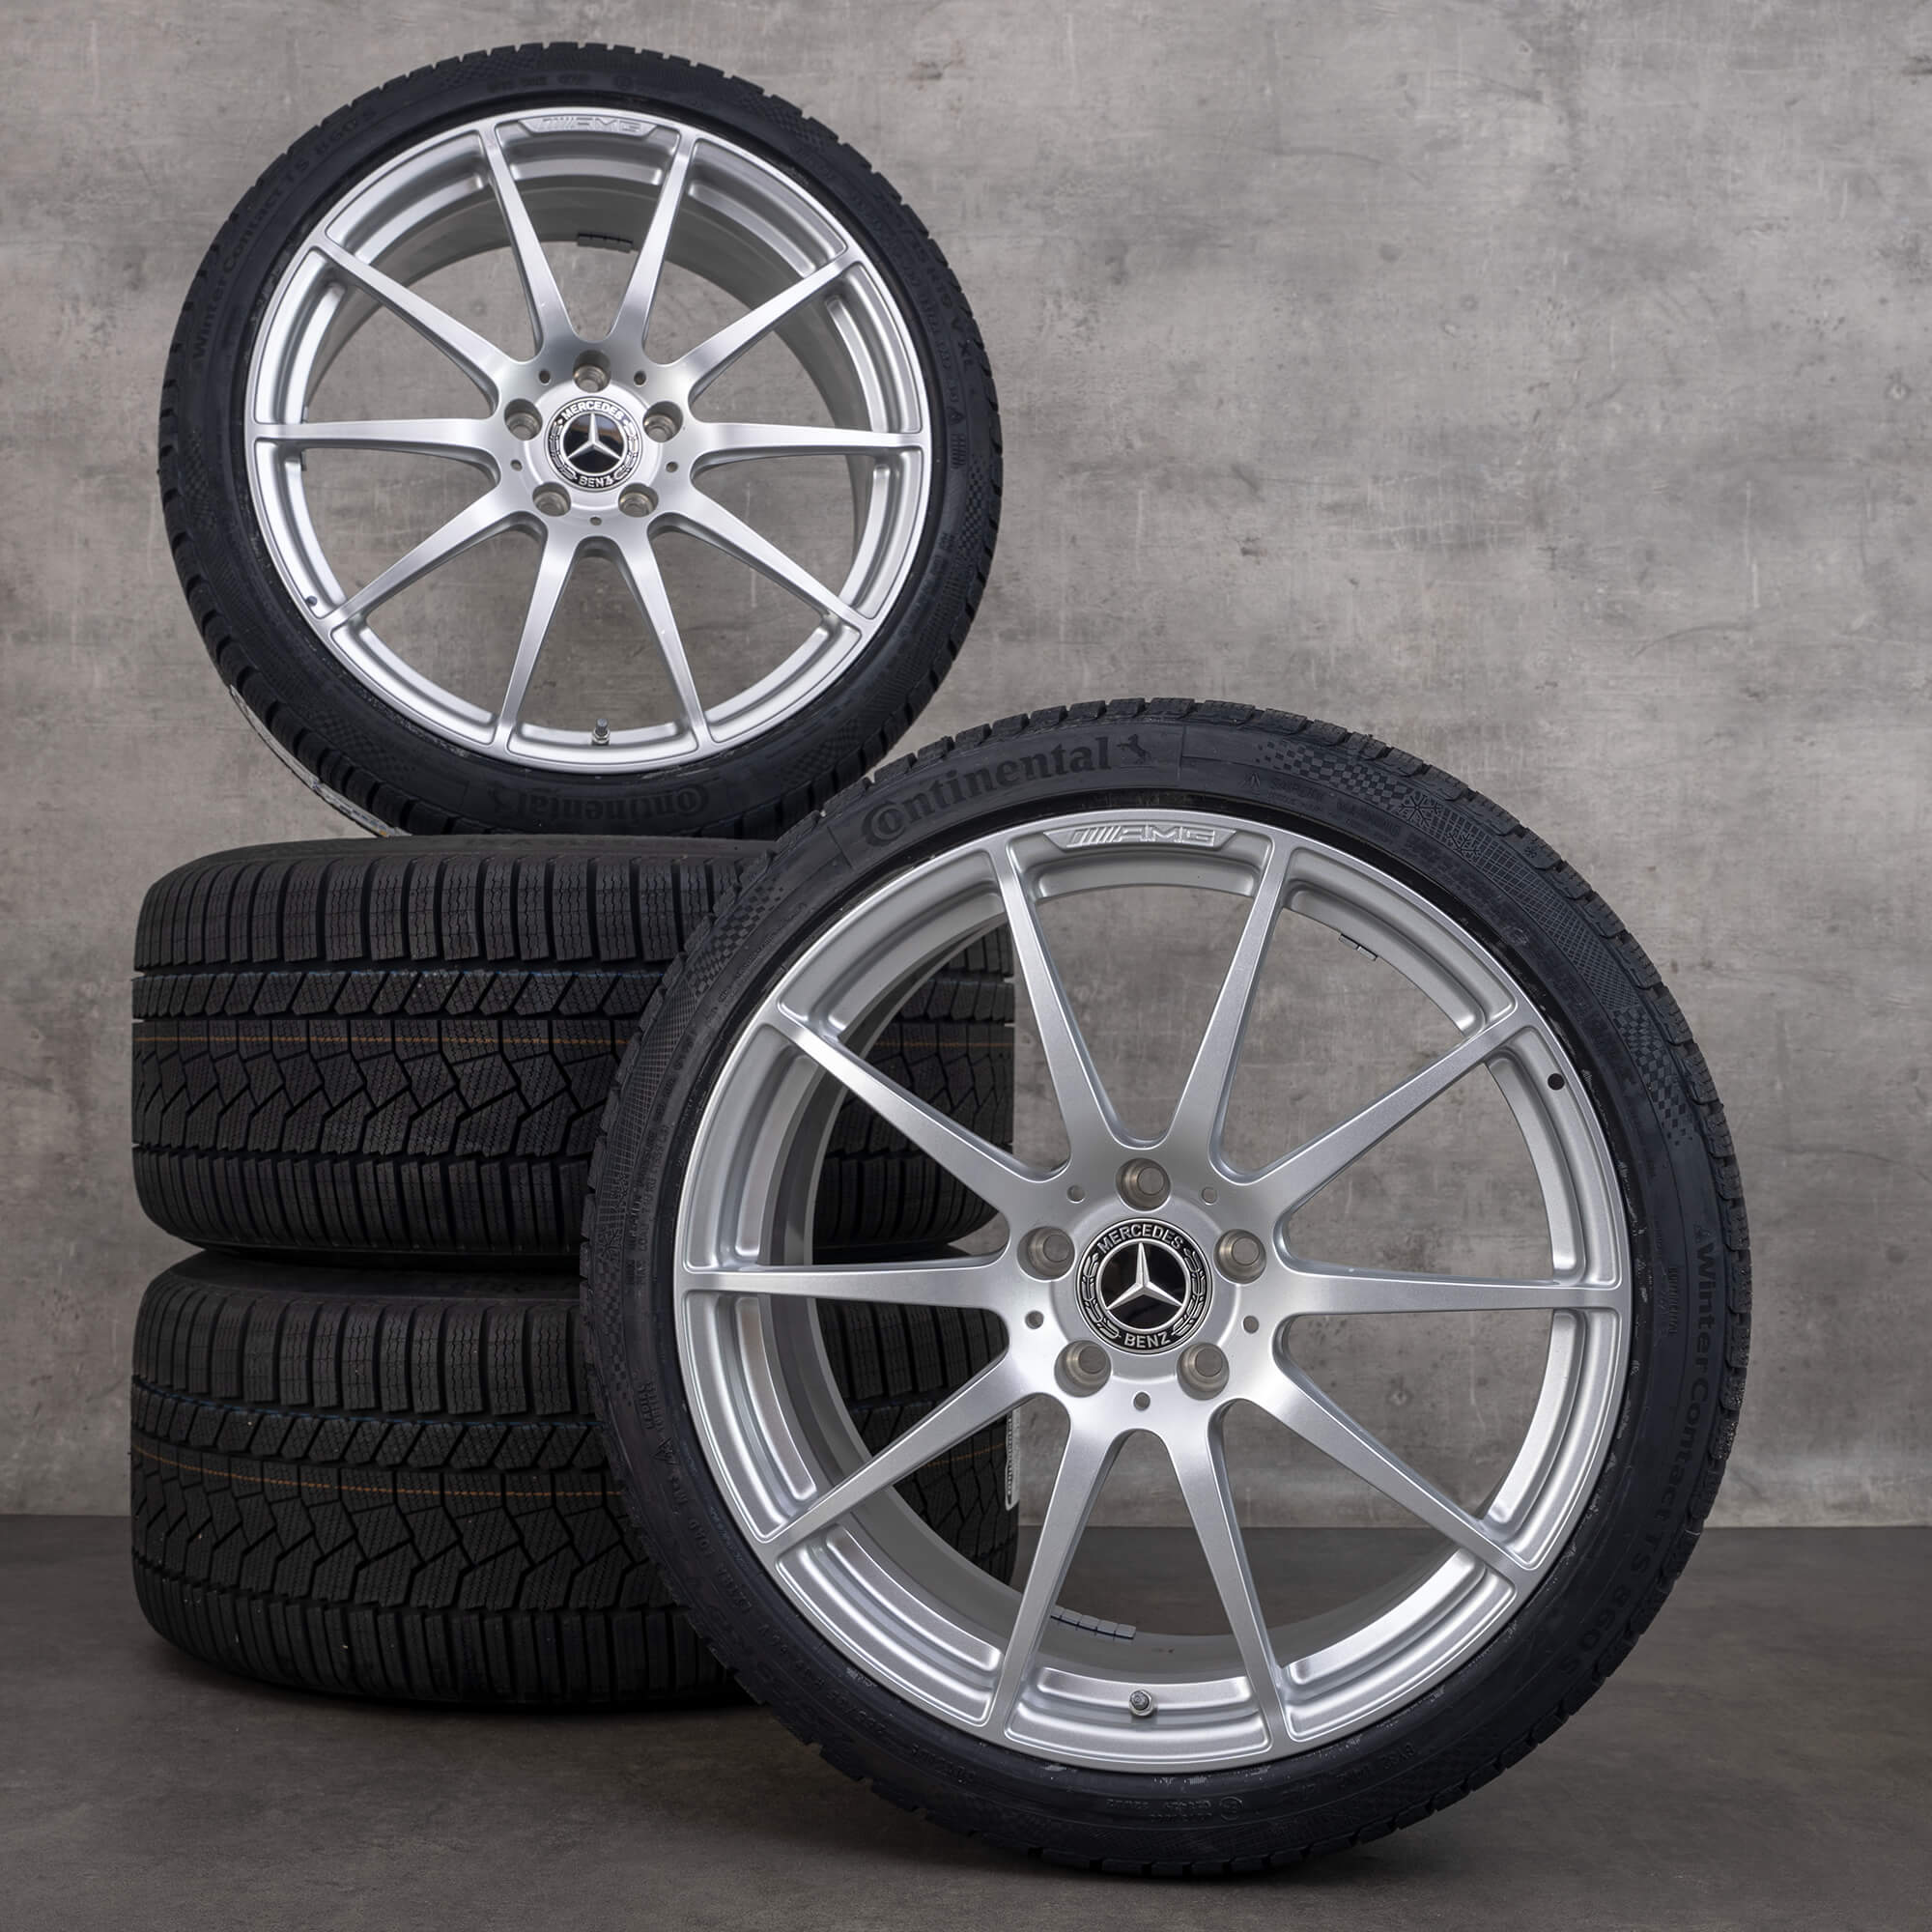 19 pouces Mercedes Benz AMG GT & S C190 R190 hiver roues complètes pneus hiver